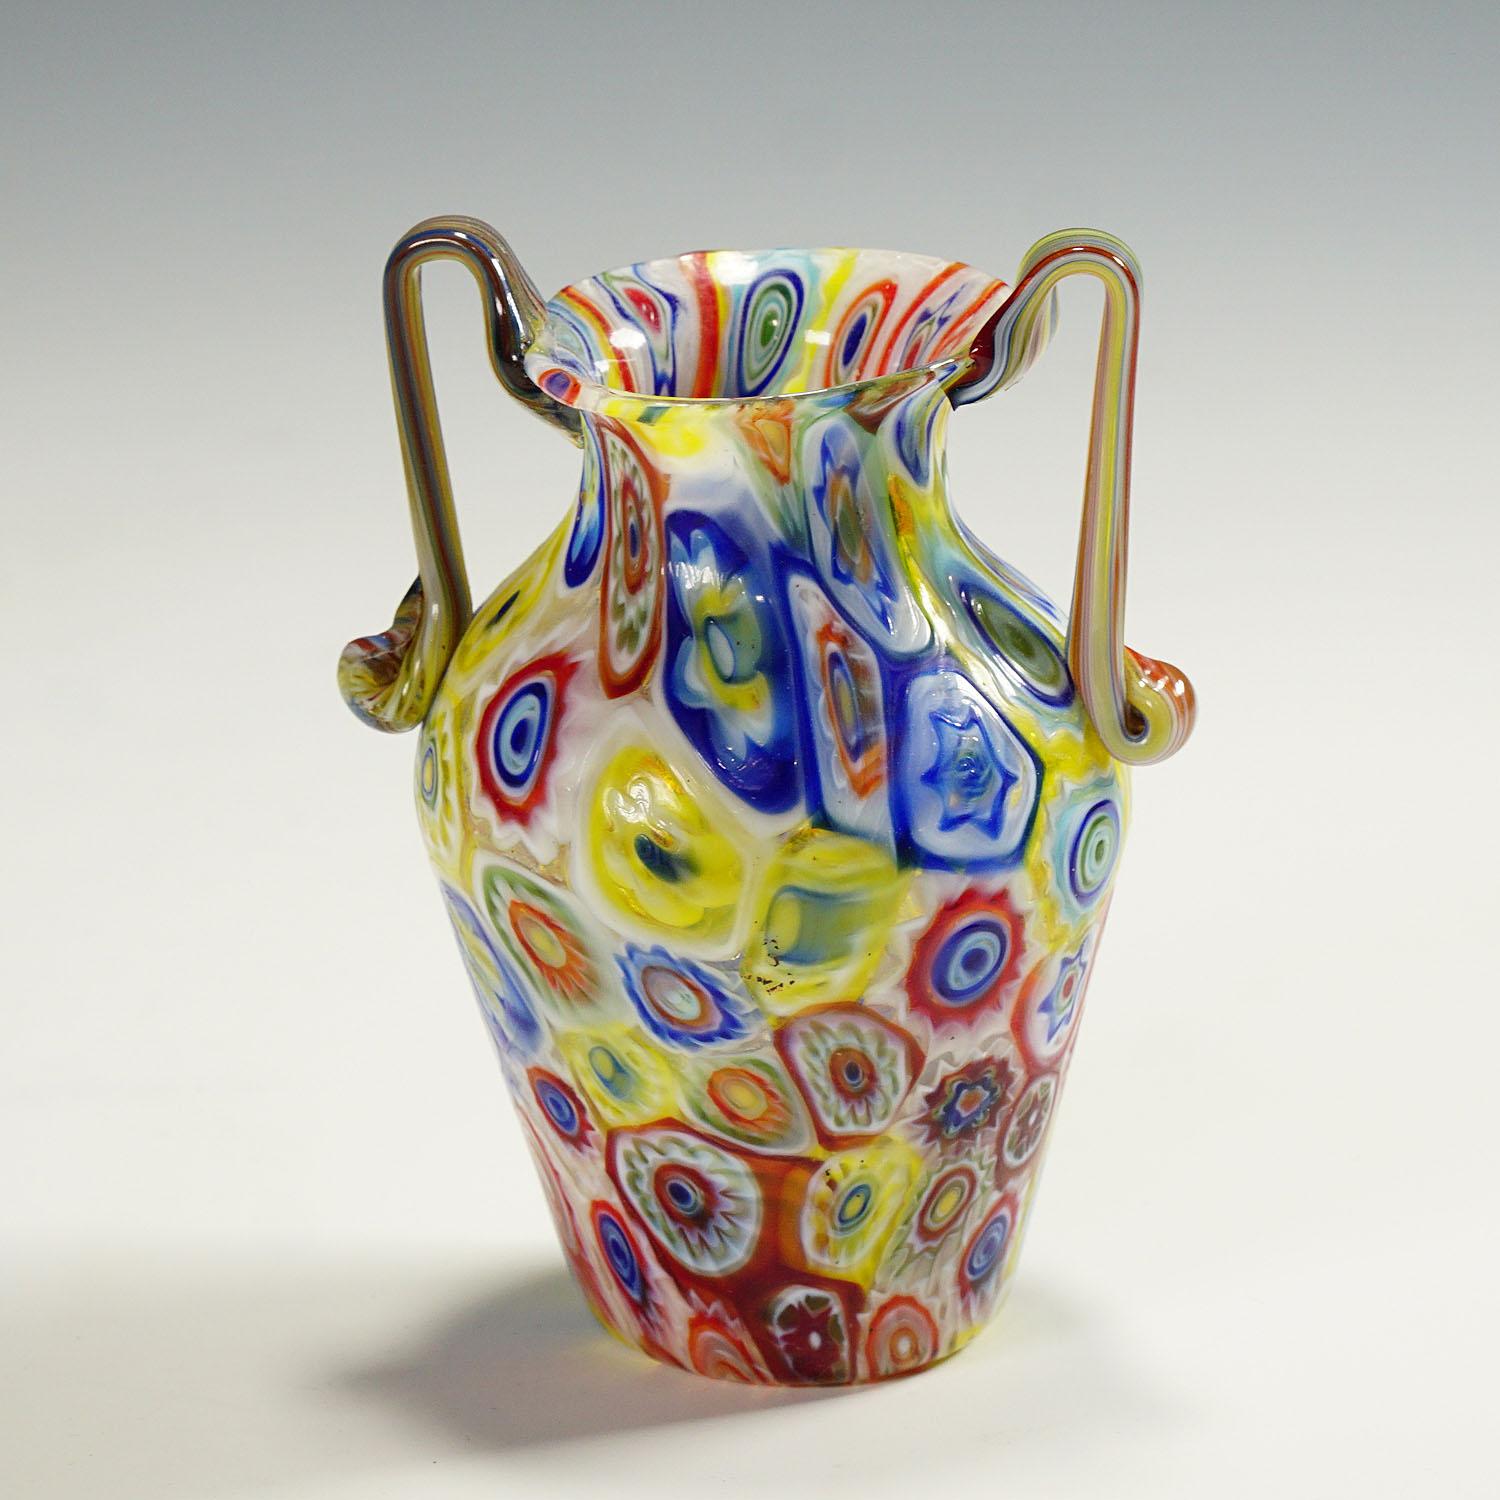 Vase ancien en verre de Murano, fabriqué par Vetreria Fratelli Toso dans les années 1920. Le vase à deux mains est exécuté en verre fin avec des millefiori multicolores et translucides. Contrairement à la plupart des vases Toso millefiori, cet